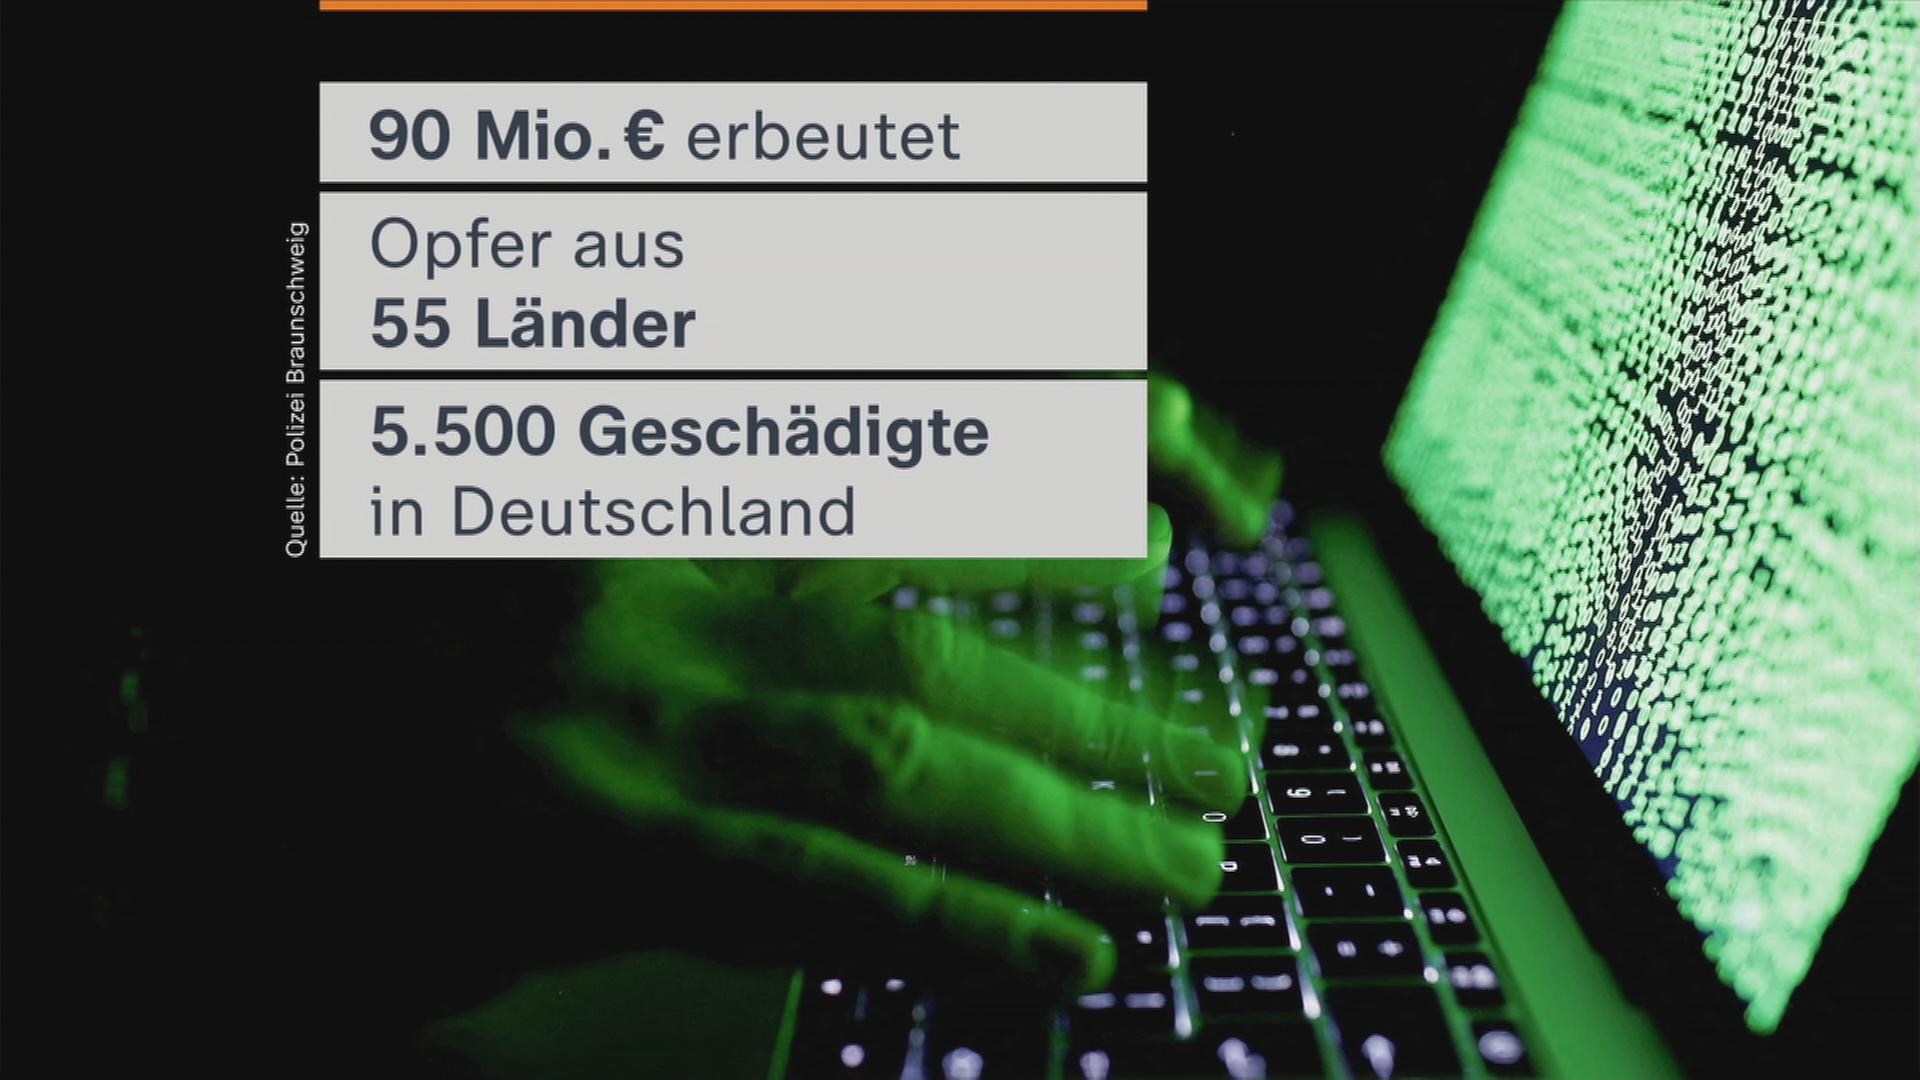 Auf dem Bild ist eine Grafik mit Zahlen zu dem Cyberbetrug zu sehen. Dabei handelt es sich um 90 Millionen Euro Beute, 55 Länder und 5.500 Betroffene in Deutschland.